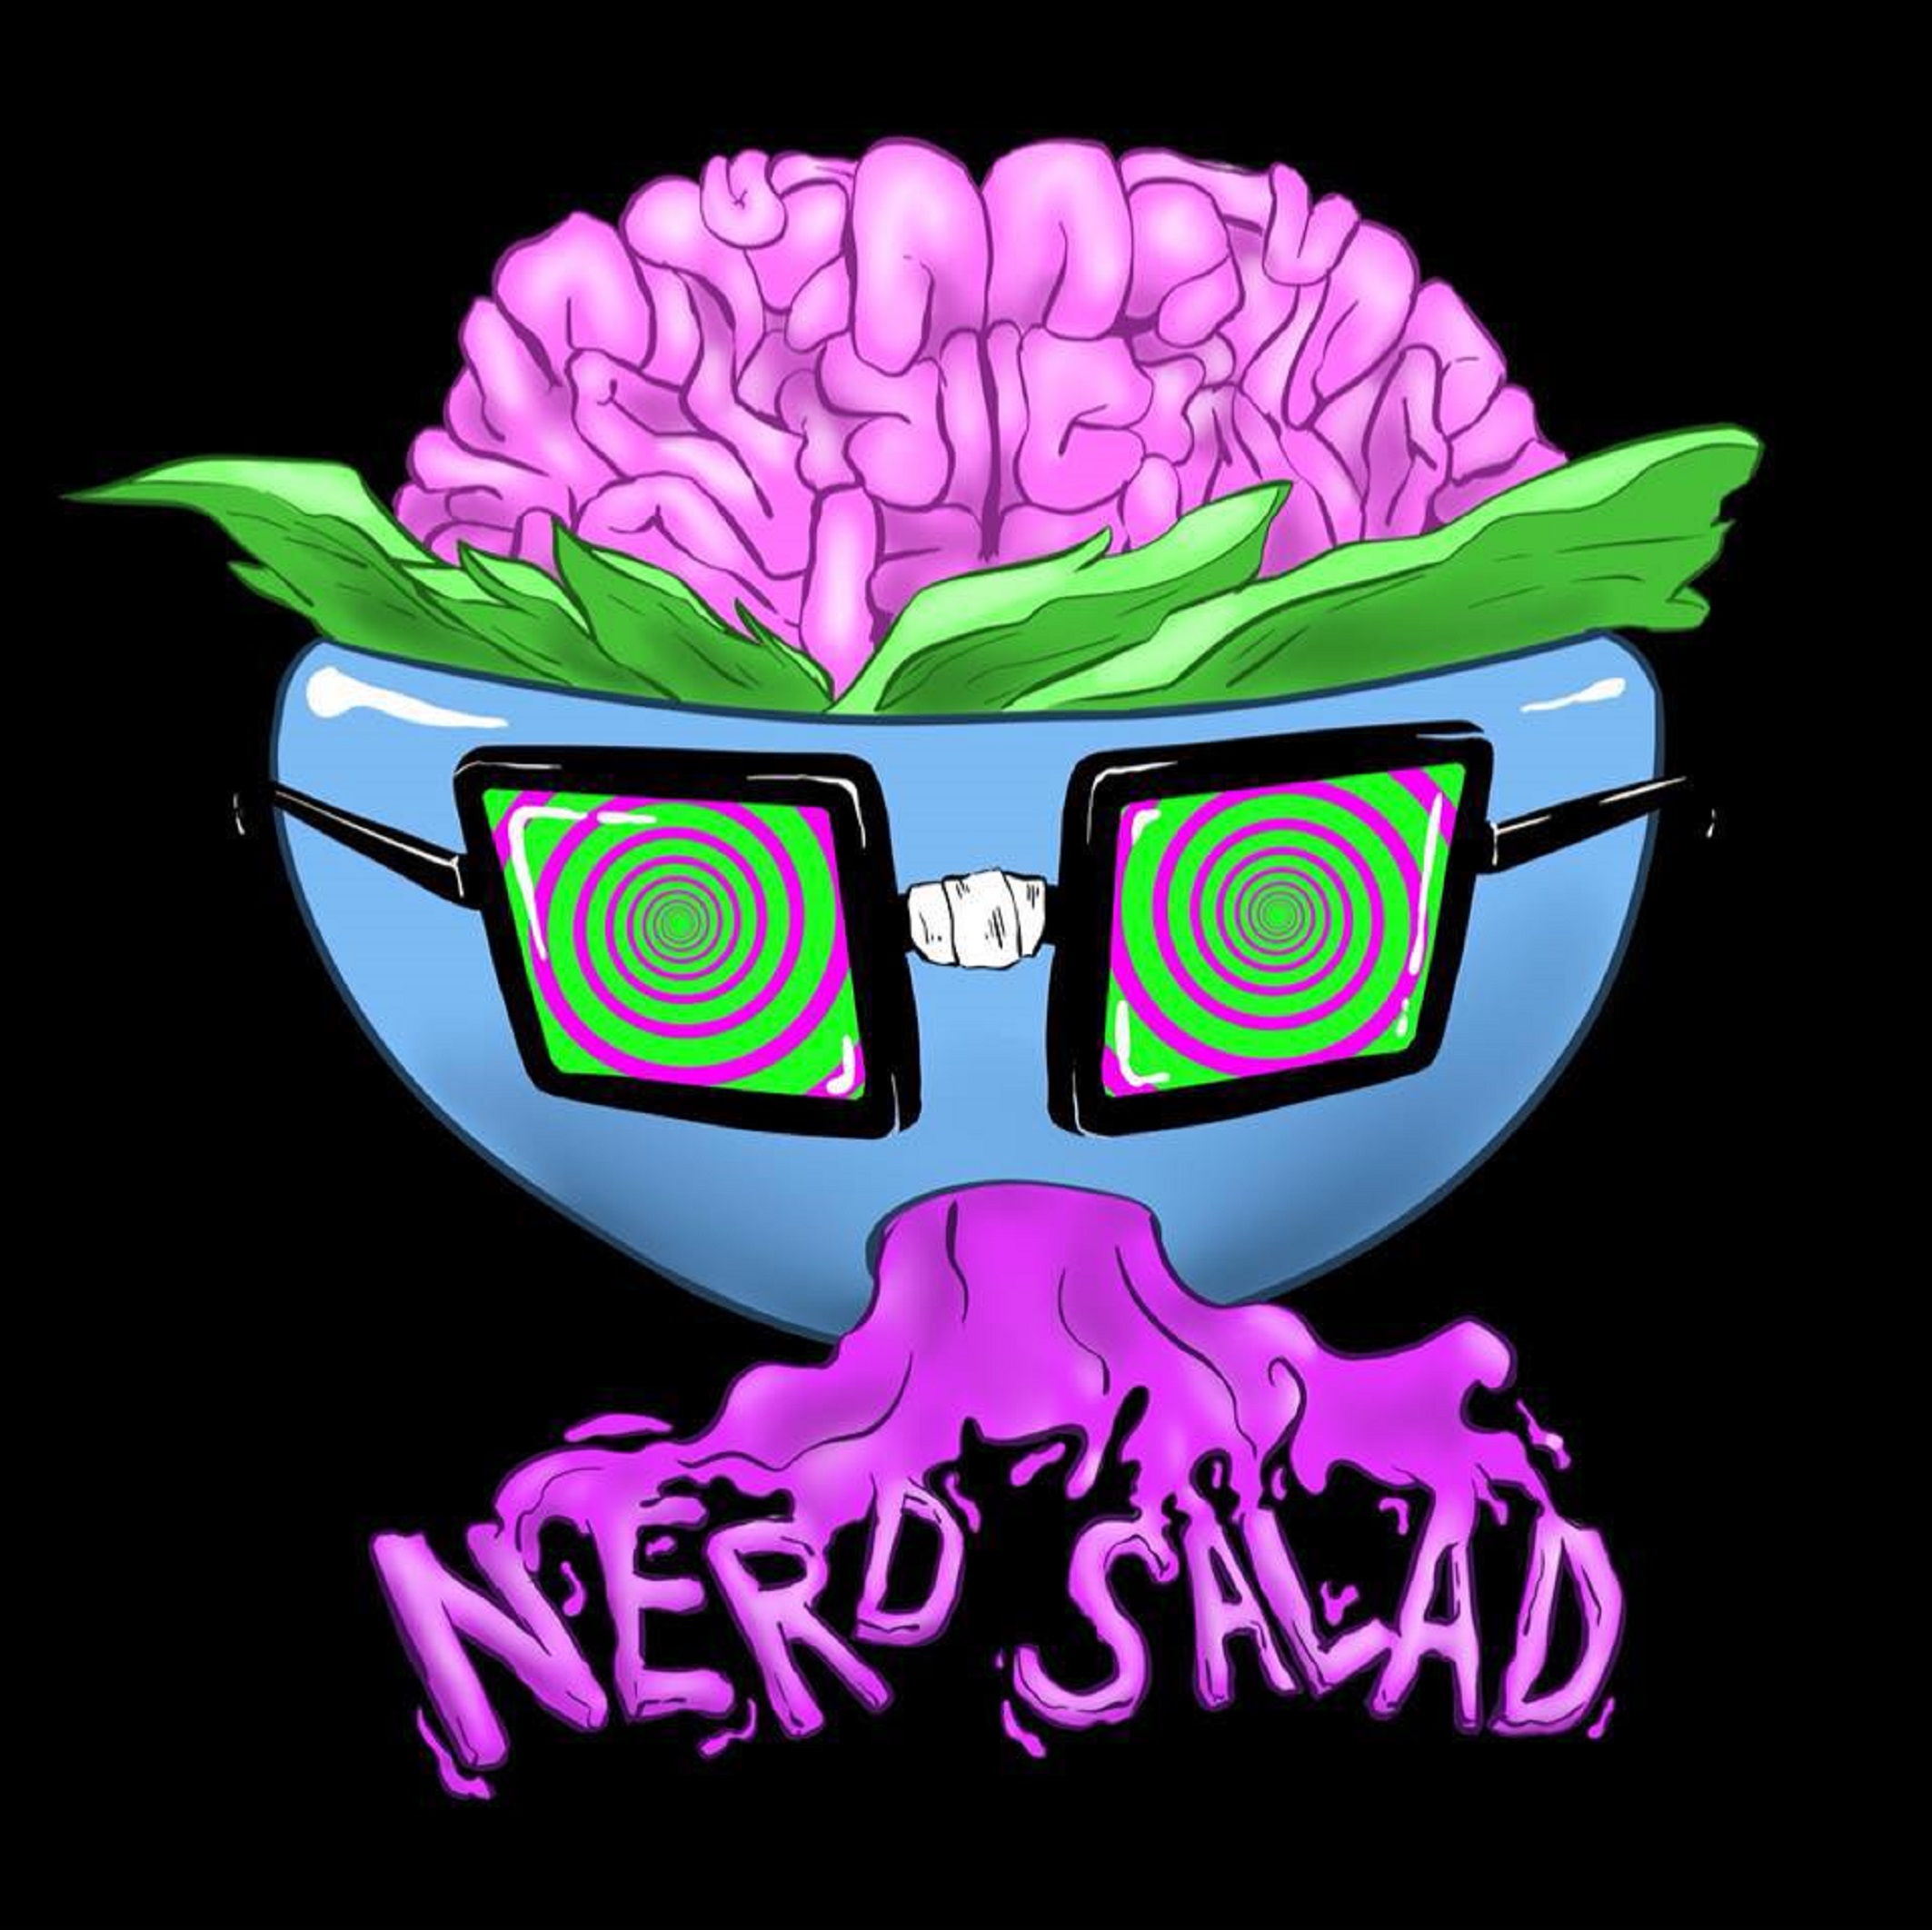 Nerd Salad’s debut album “Press Start” drops June 3rd, 2022